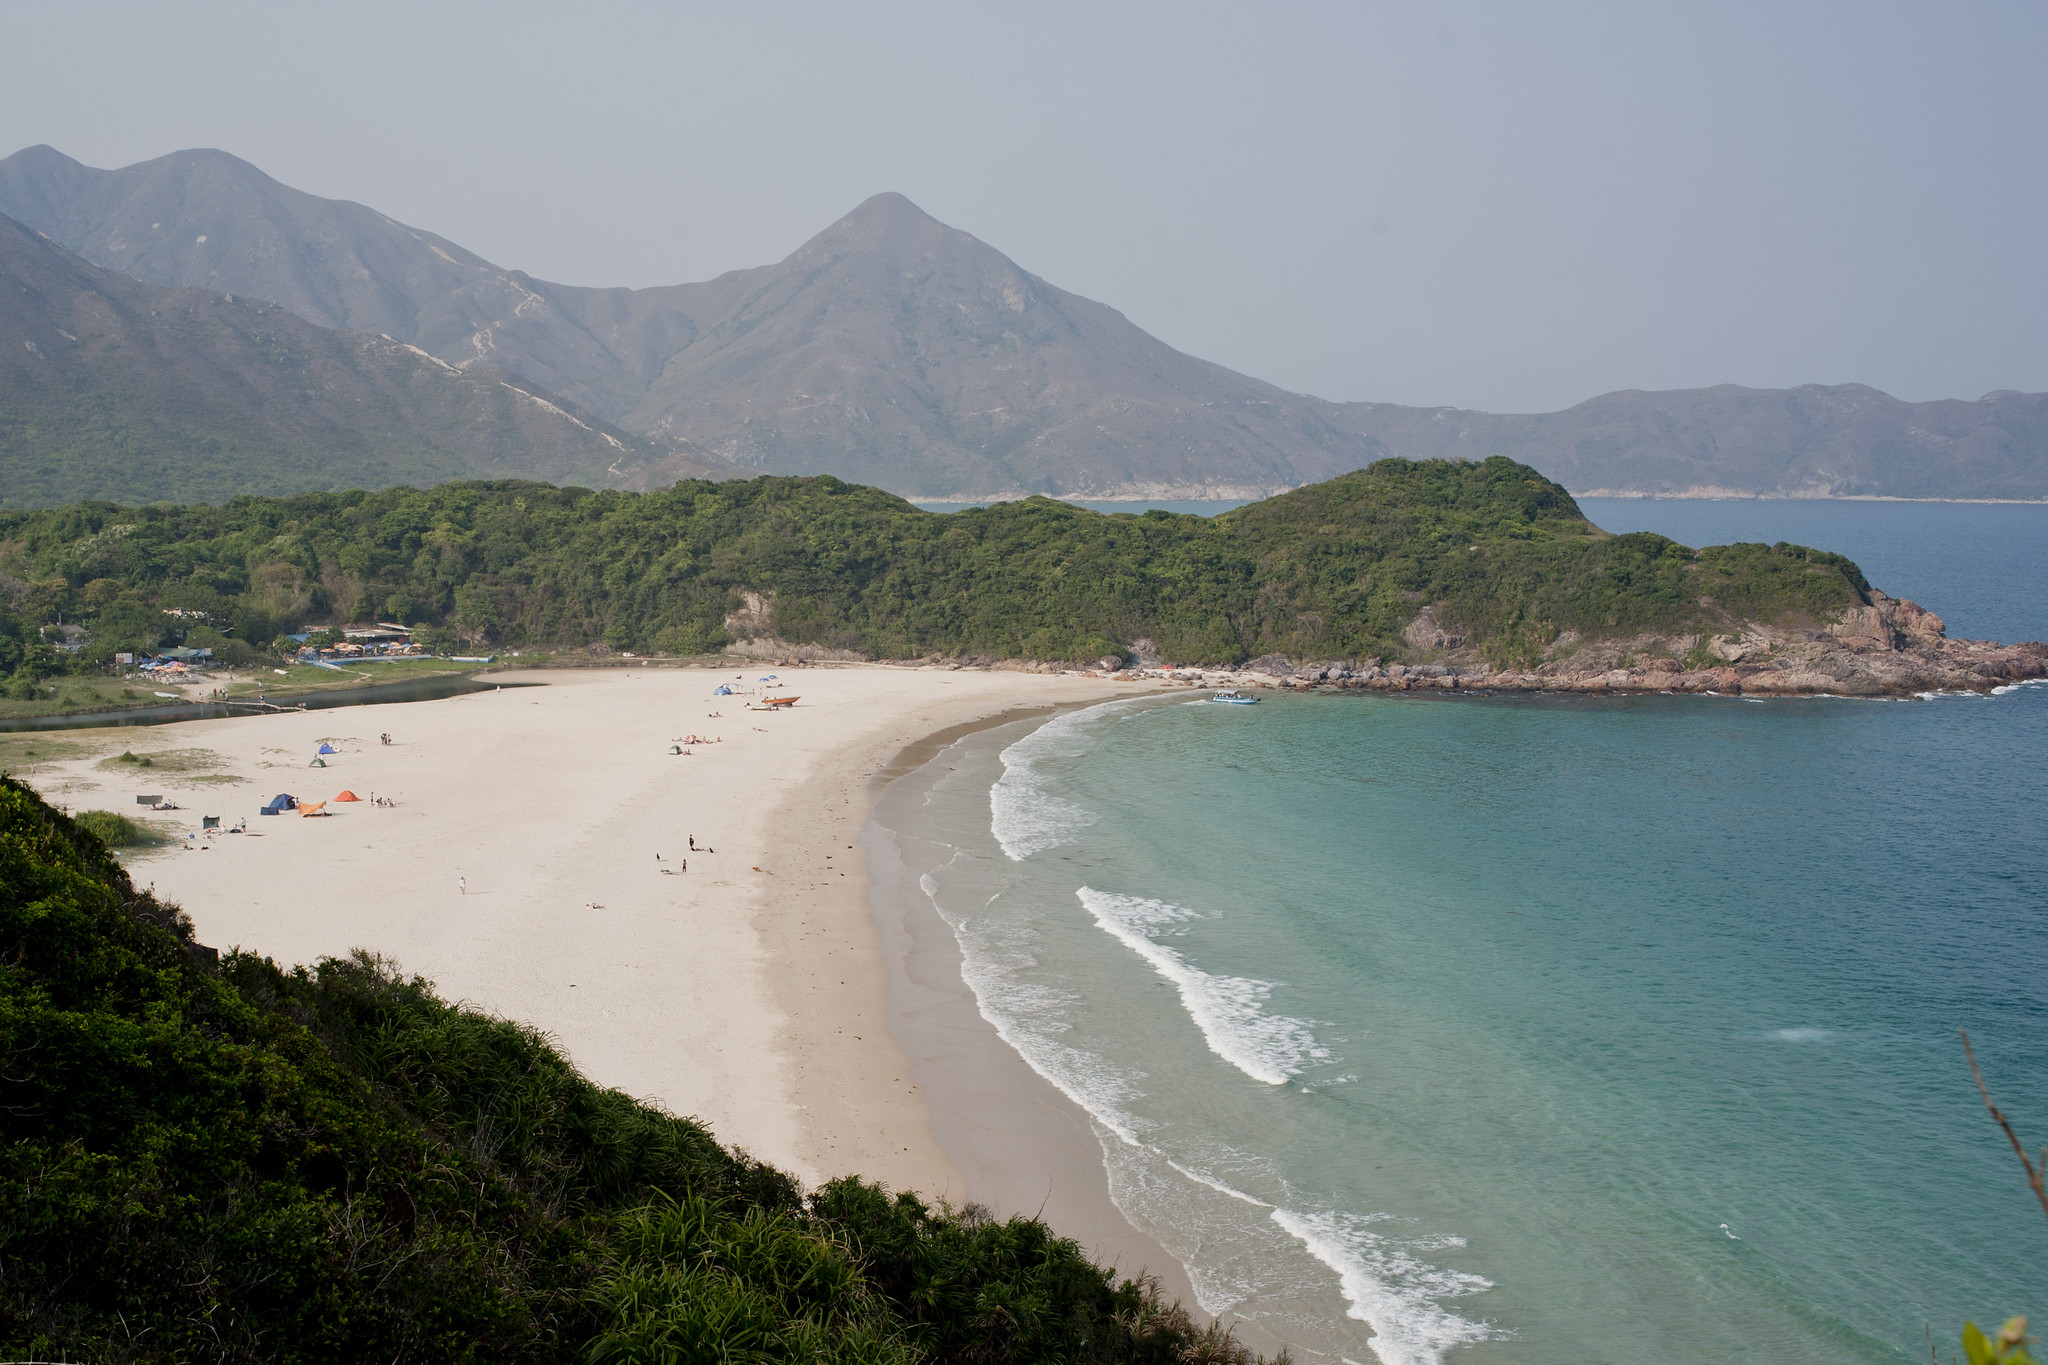 Best Beaches in Hong Kong Top 10 Hong Kong Beaches